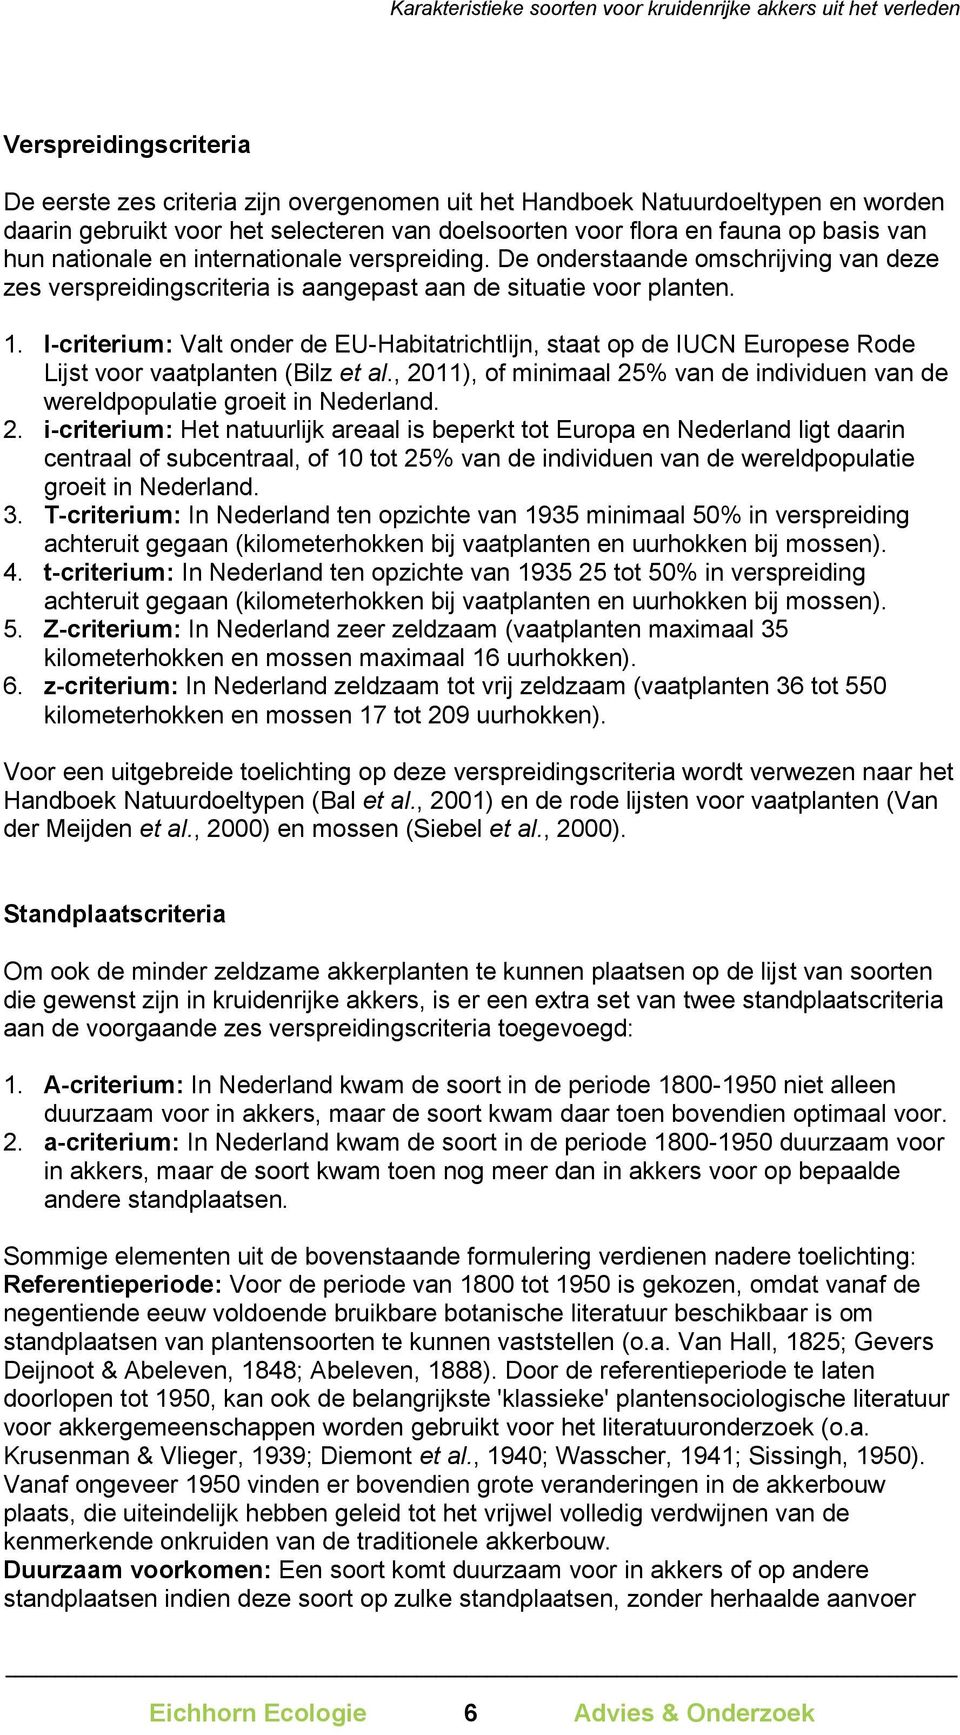 I-criterium: Valt onder de EU-Habitatrichtlijn, staat op de IUCN Europese Rode Lijst voor vaatplanten (Bilz et al., 2011), of minimaal 25% van de individuen van de wereldpopulatie groeit in Nederland.